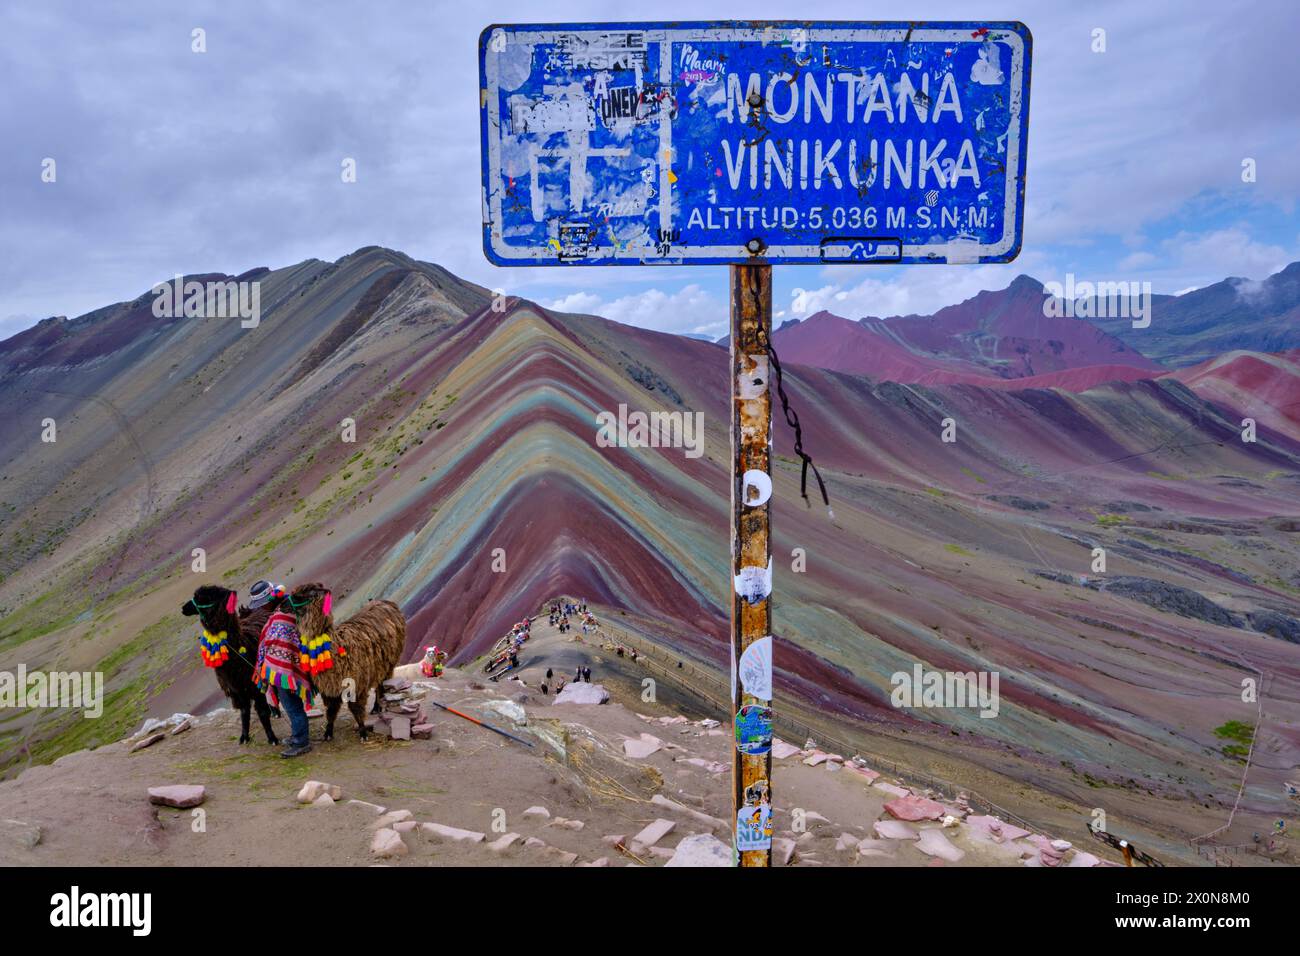 Perù, provincia di Cuzco, Vinicunca, Montana de siete Colores o Rainbow Mountain, lama per turisti Foto Stock